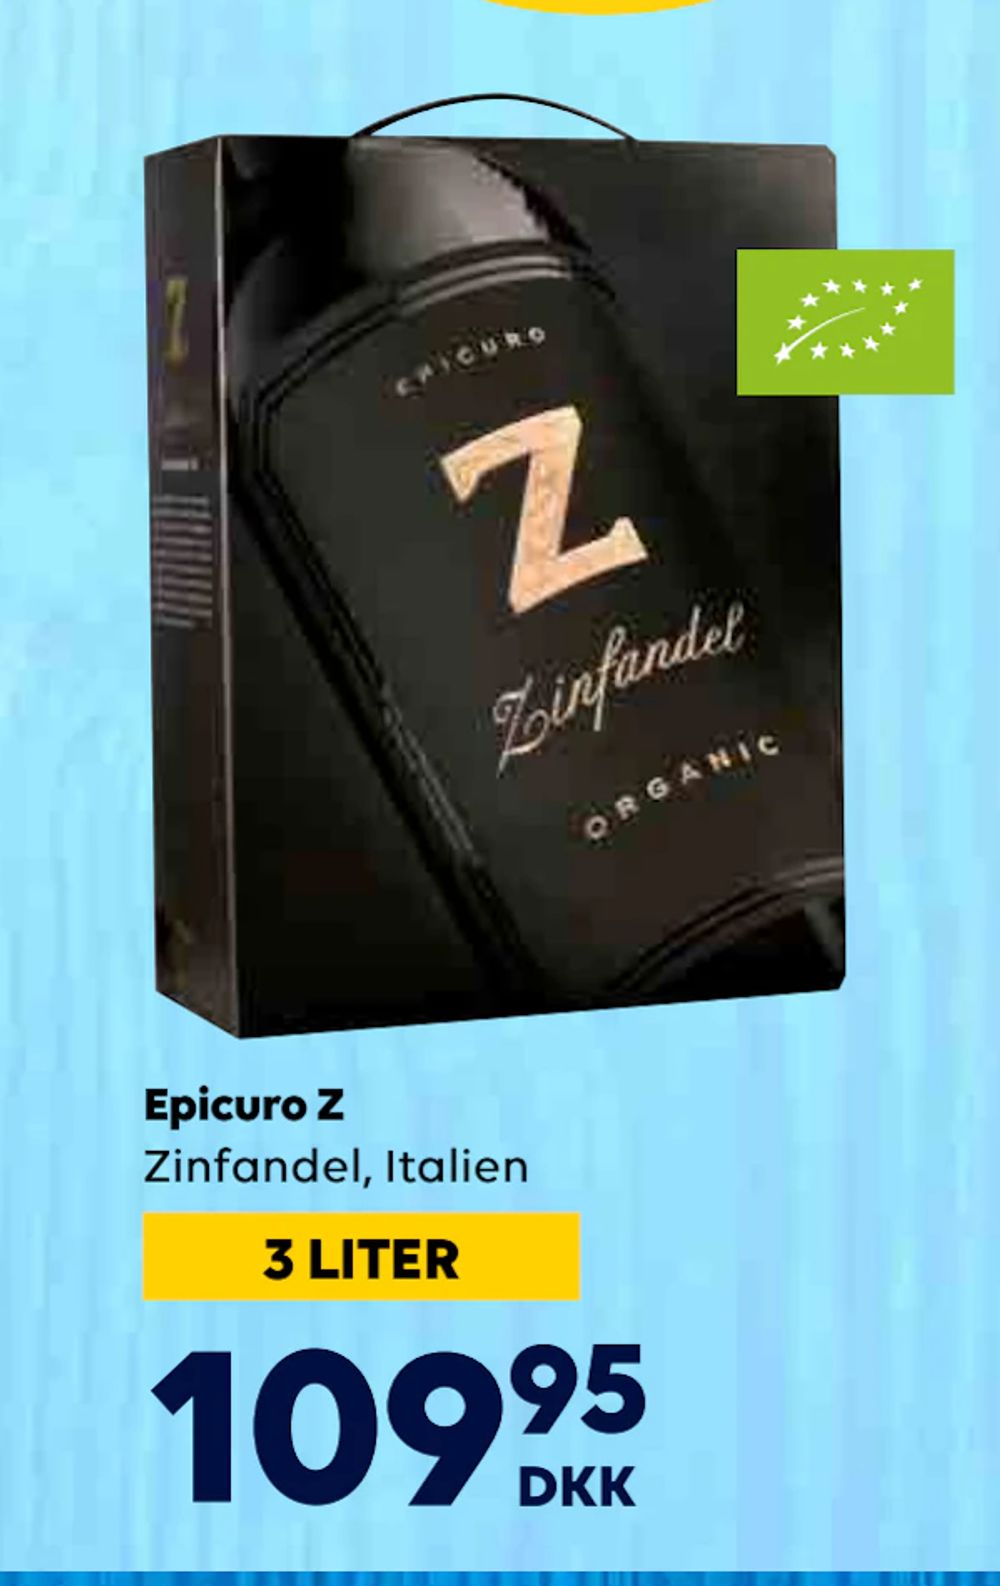 Tilbud på Epicuro Z fra BorderShop til 109,95 kr.